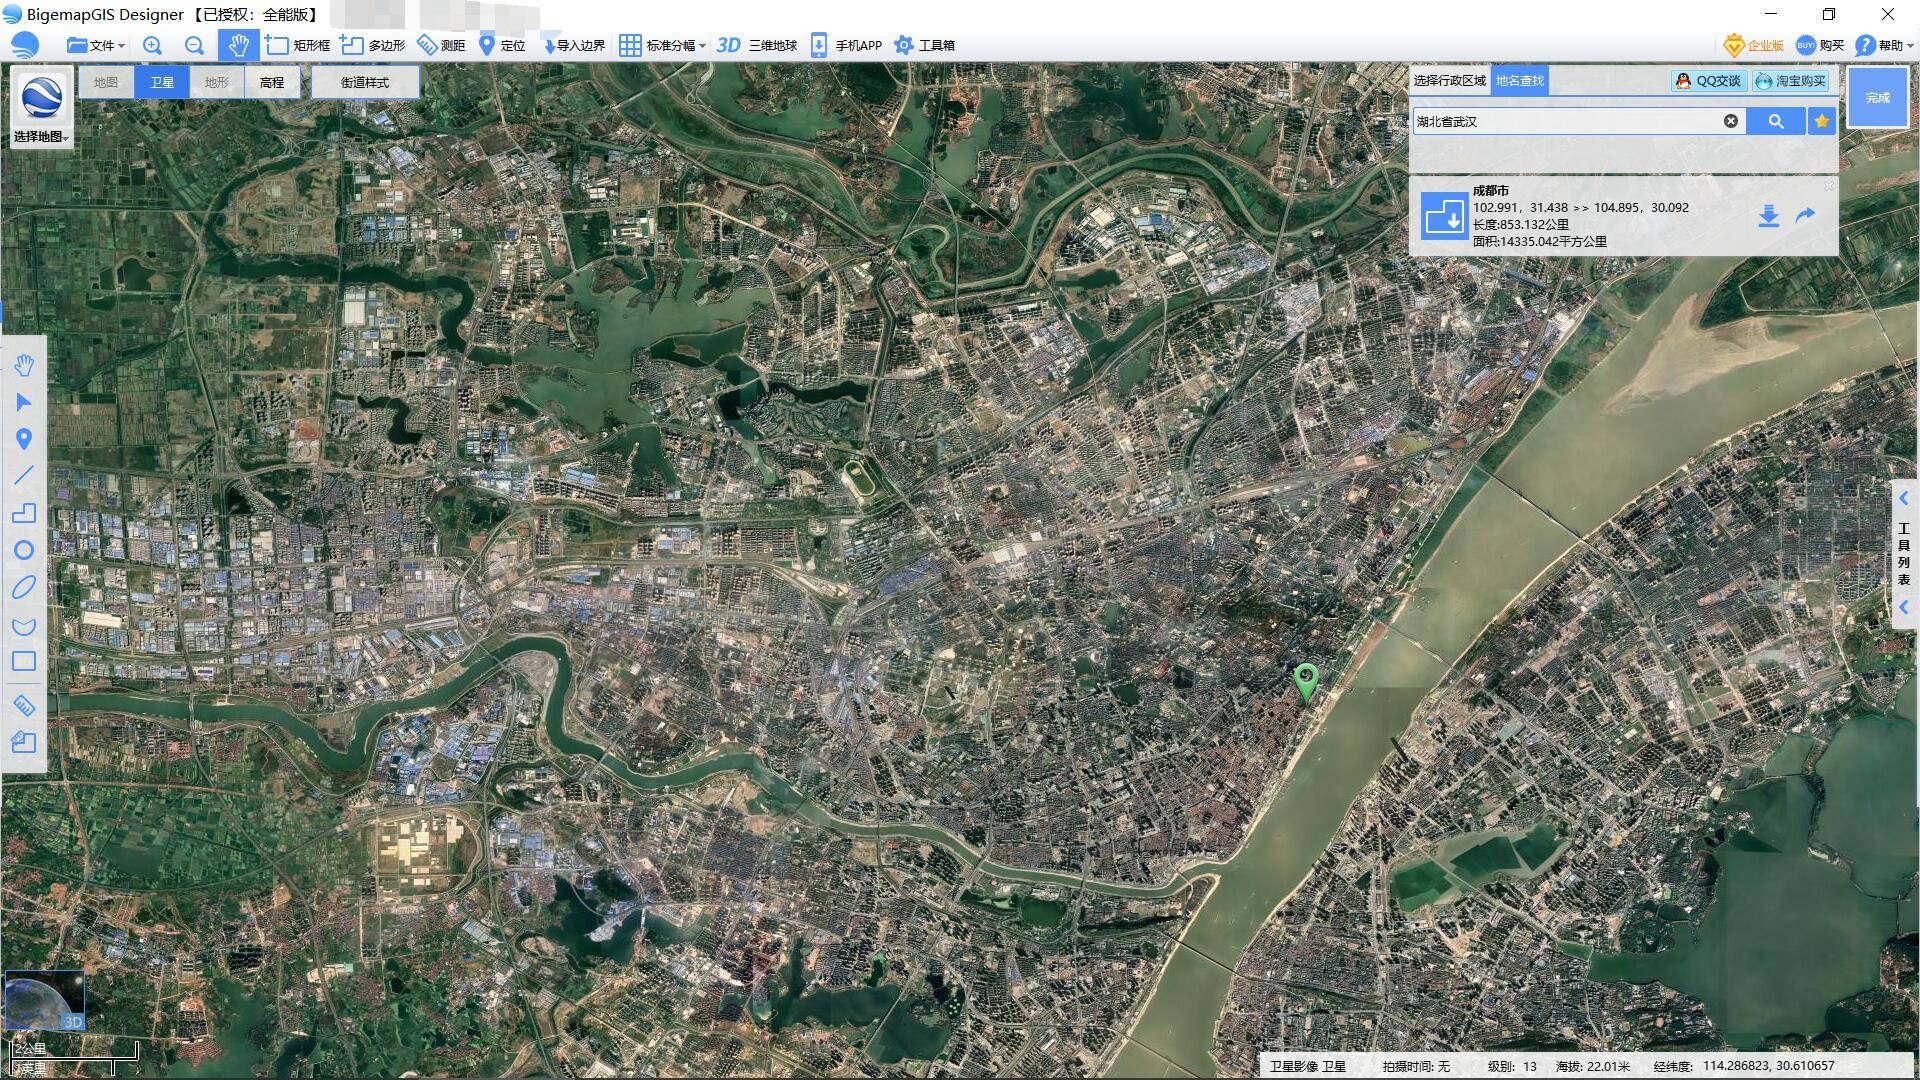 从卫星地图看,为什么和国外比国内大多城市显得没有规划?